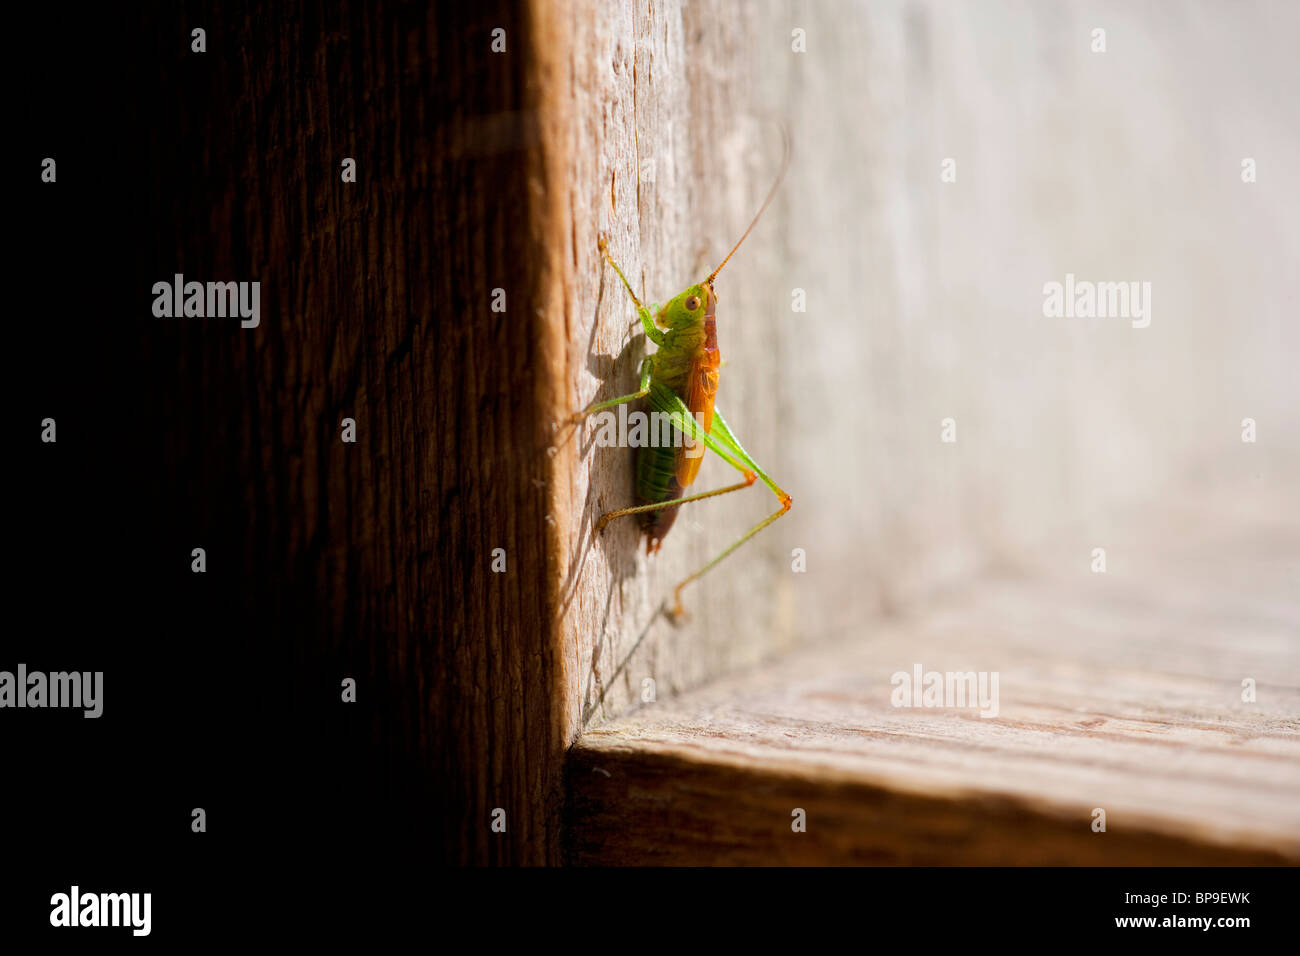 grasshopper Stock Photo